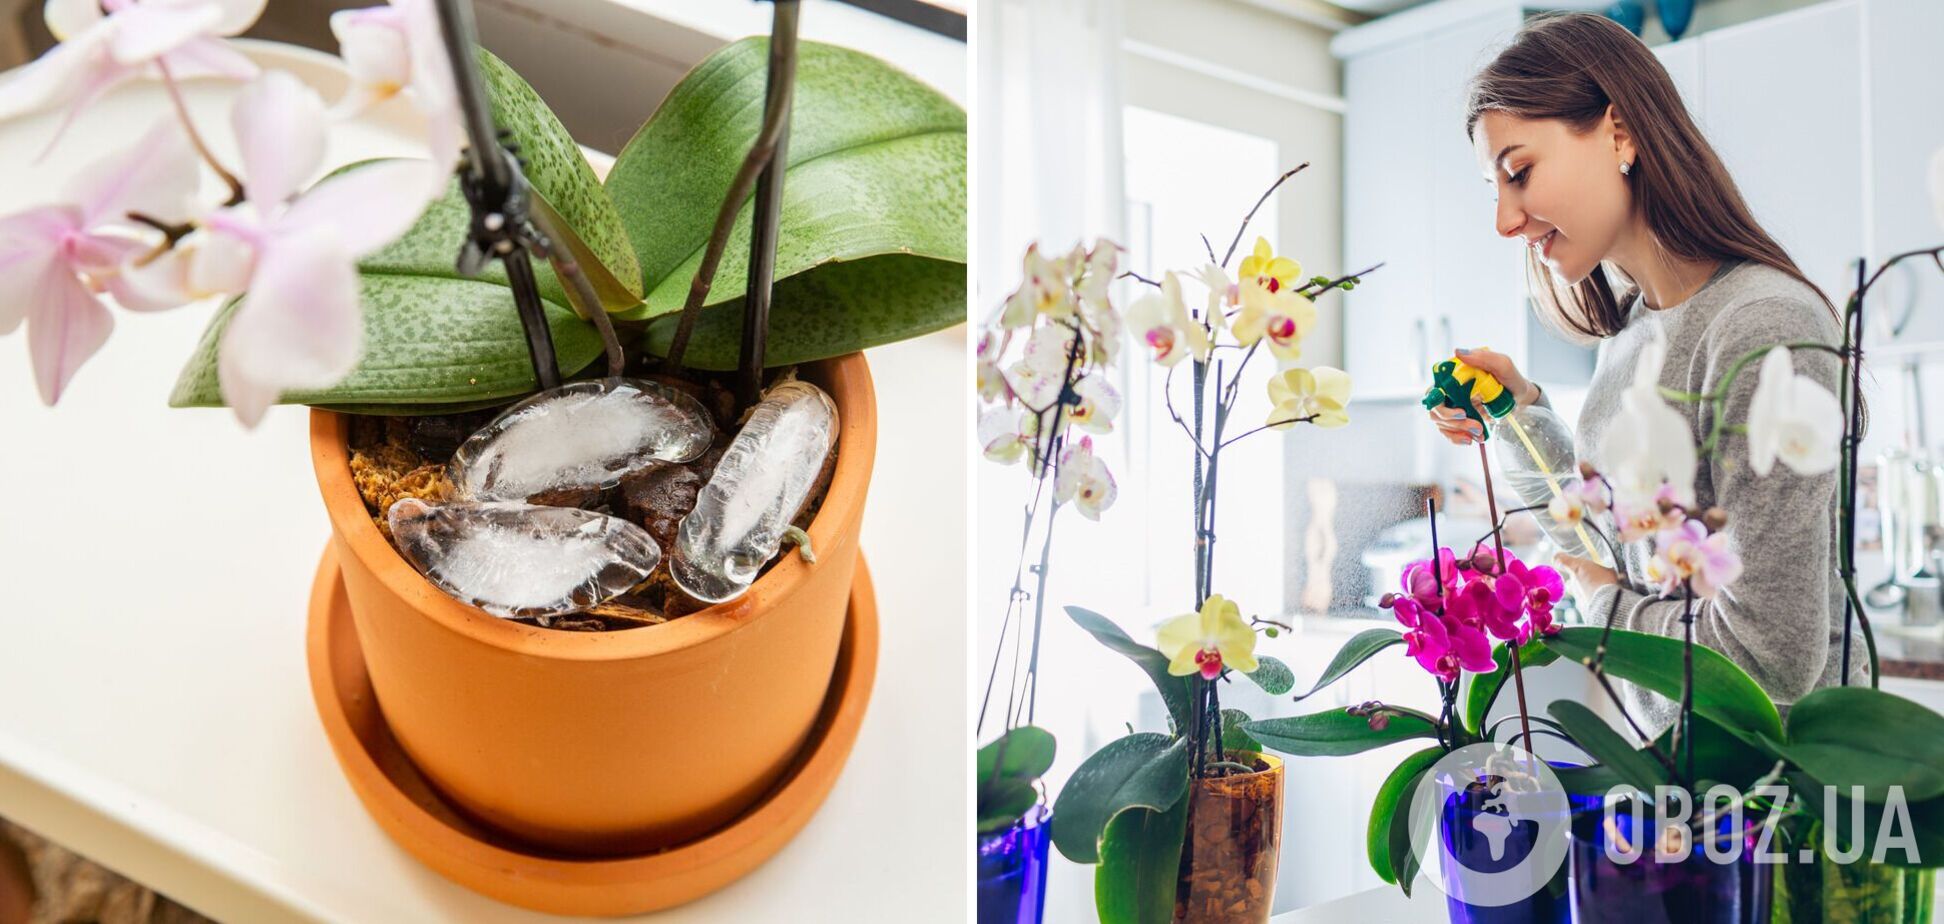 Якщо ви вперше завели орхідею: що треба знати про примхливу квітку